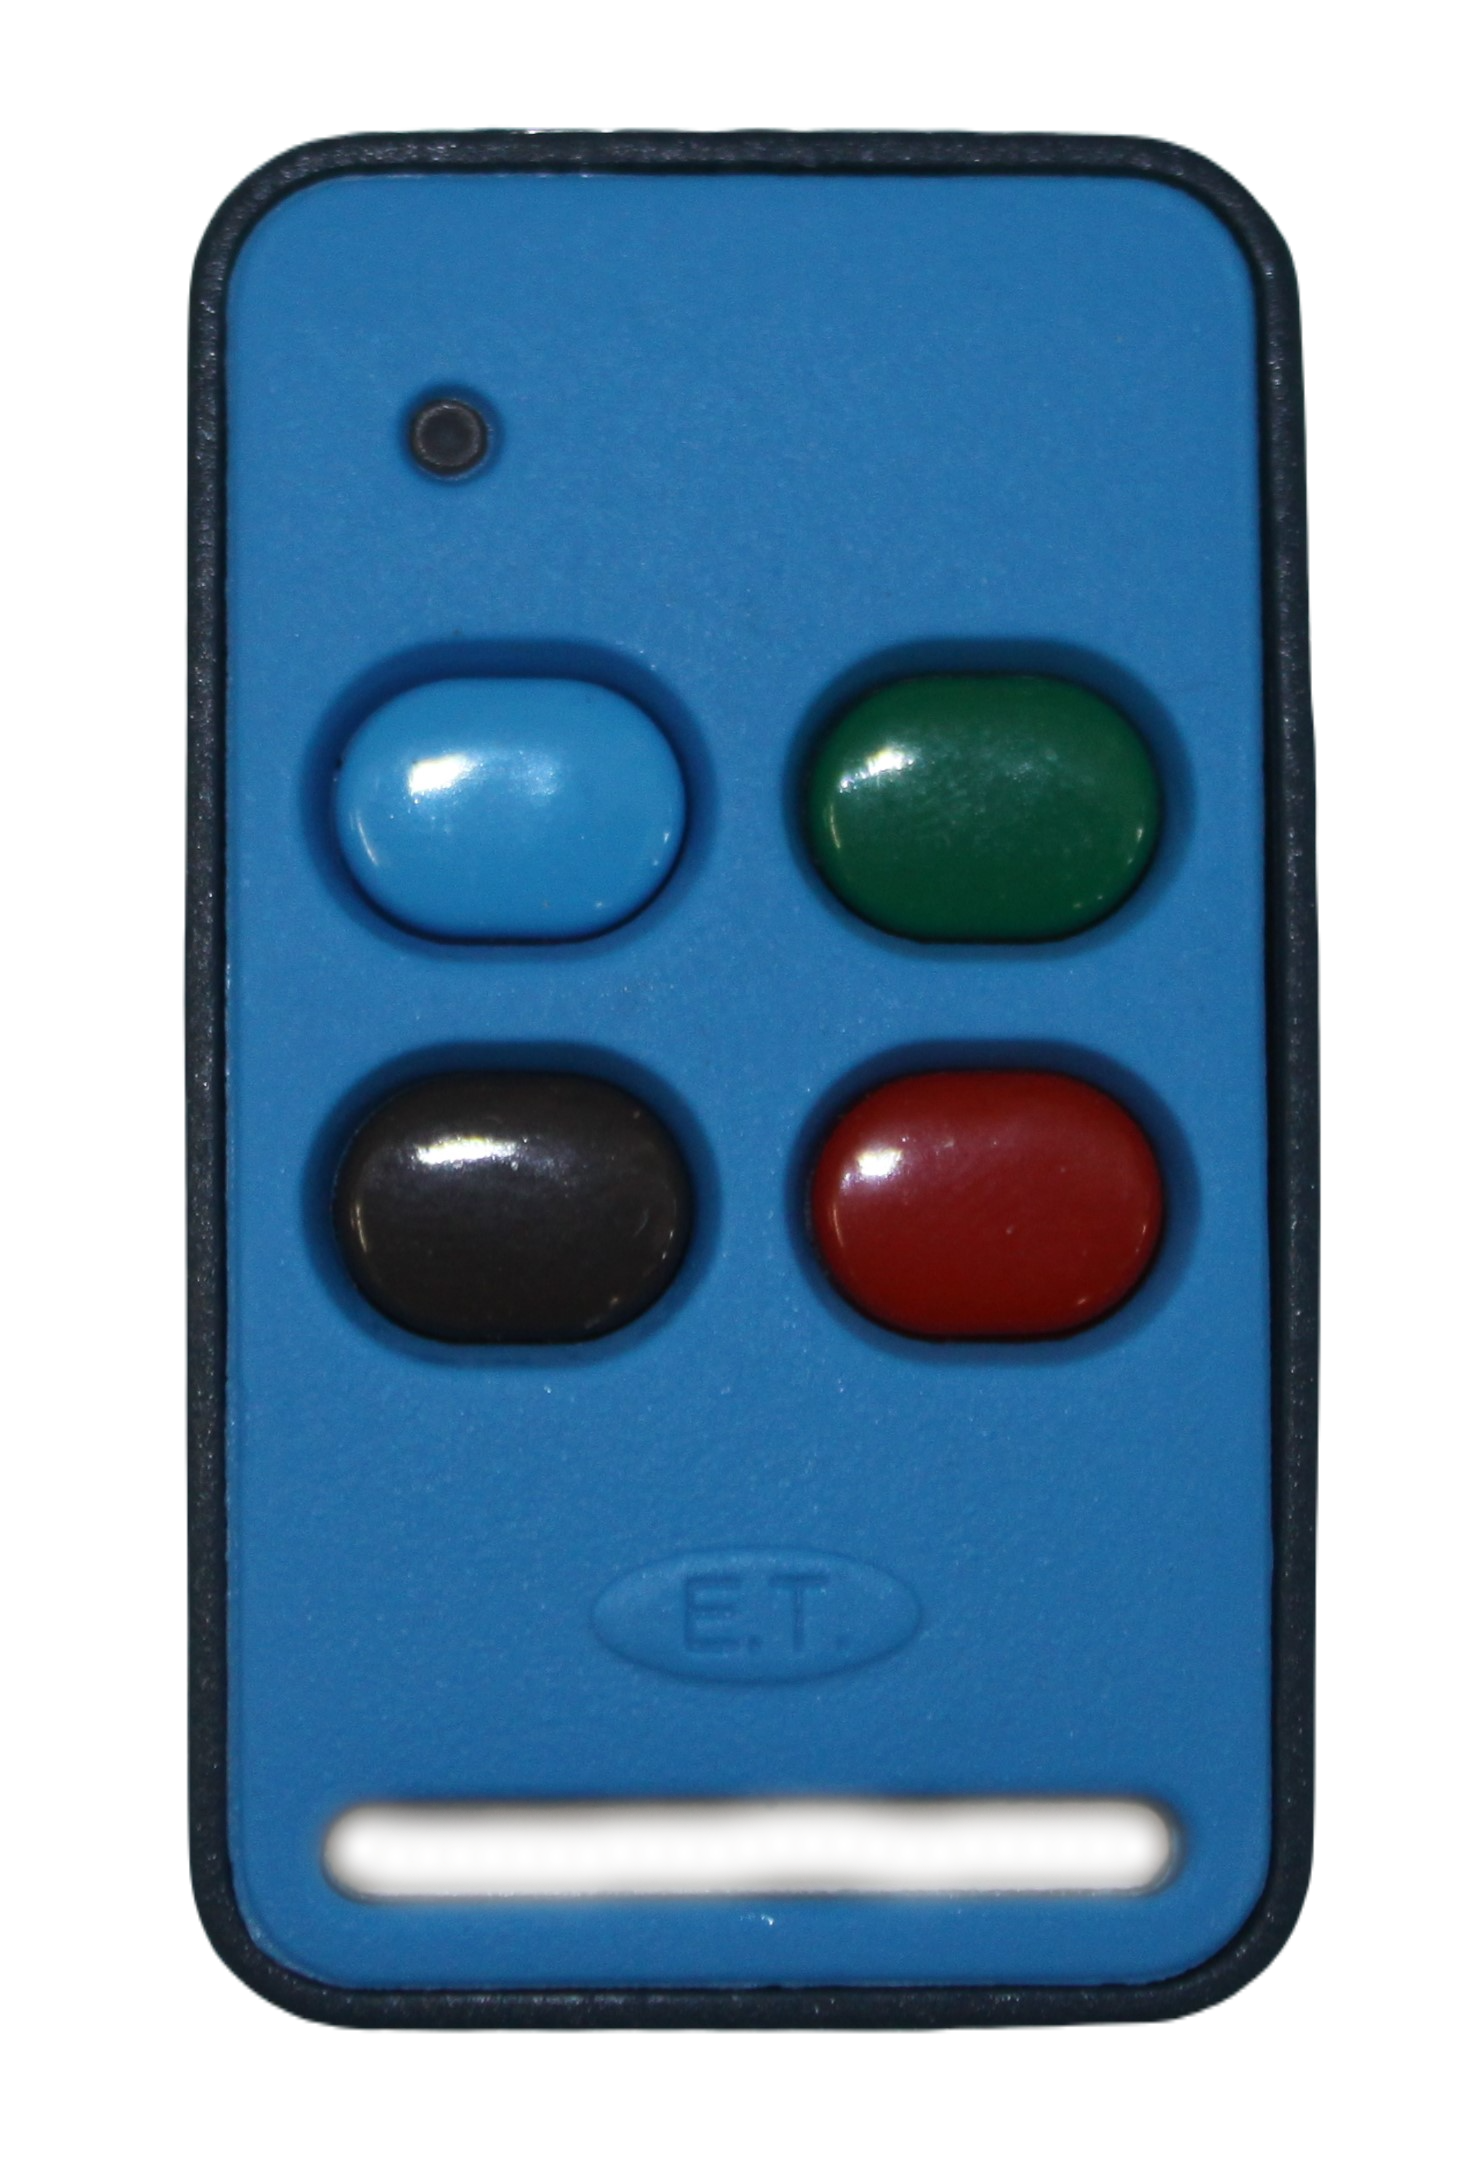 et-remote-4-button-remote